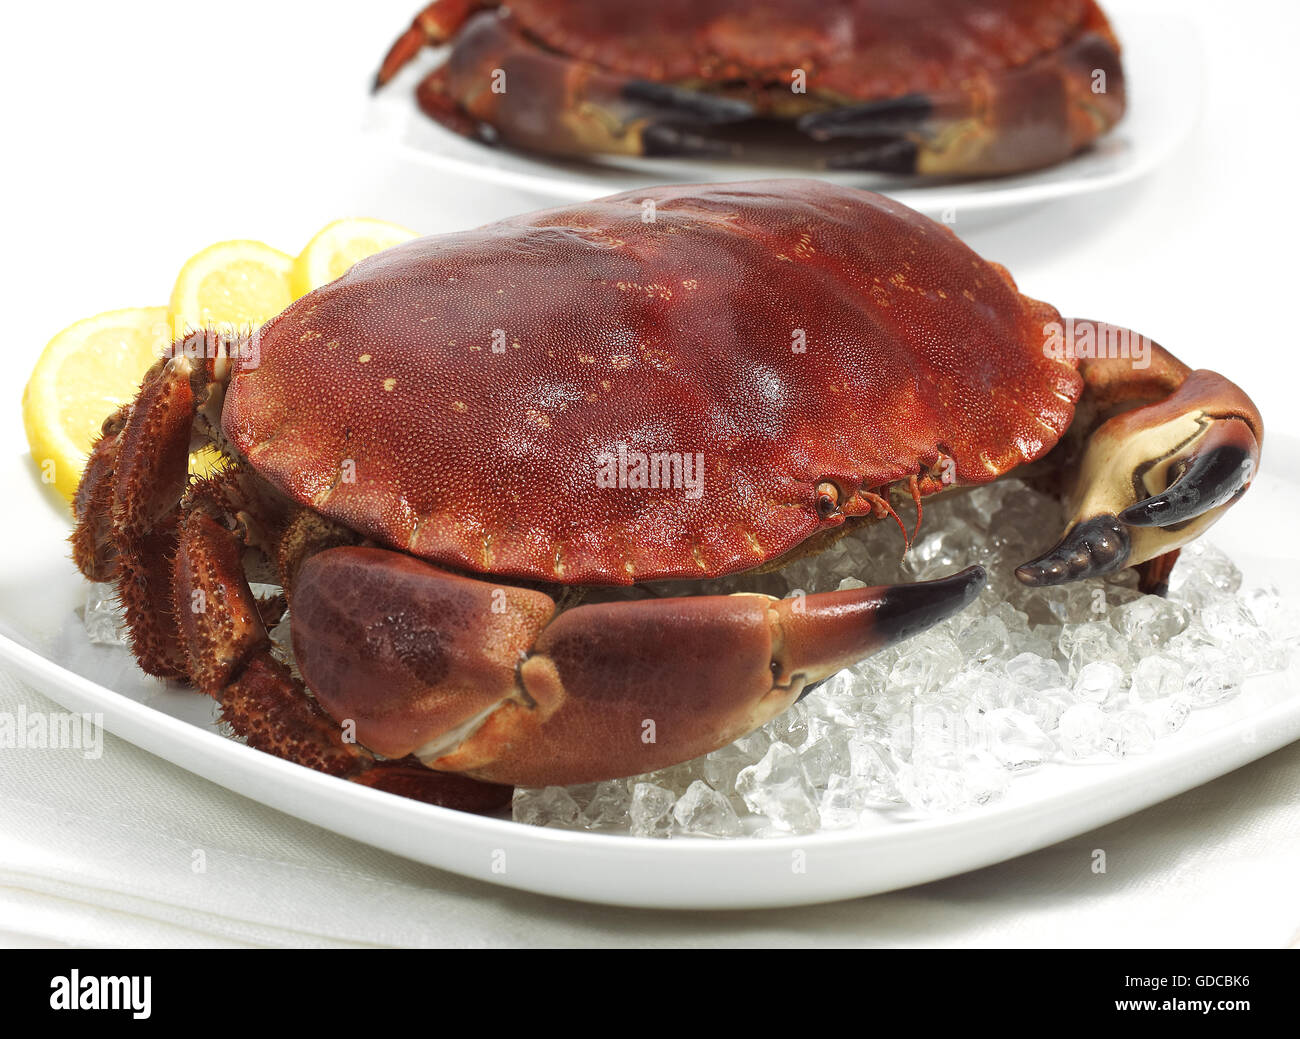 Crabe frais, Cancer pagurus sur la glace Banque D'Images